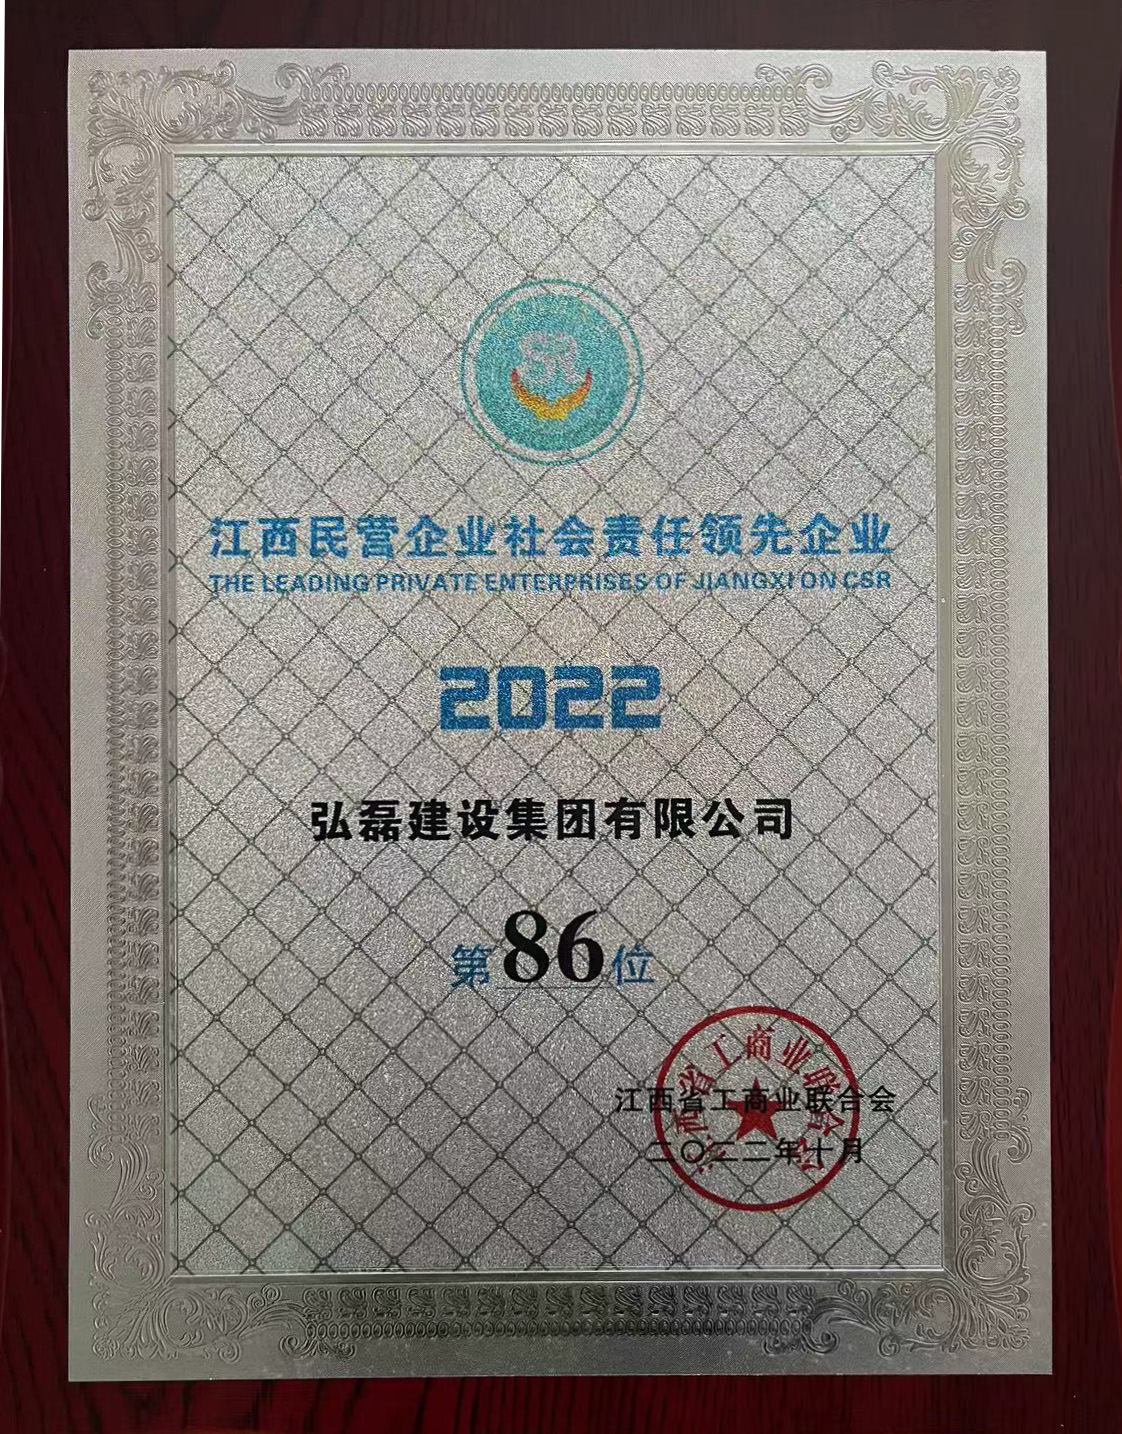 江西民营企业社会责任领先企业第86位